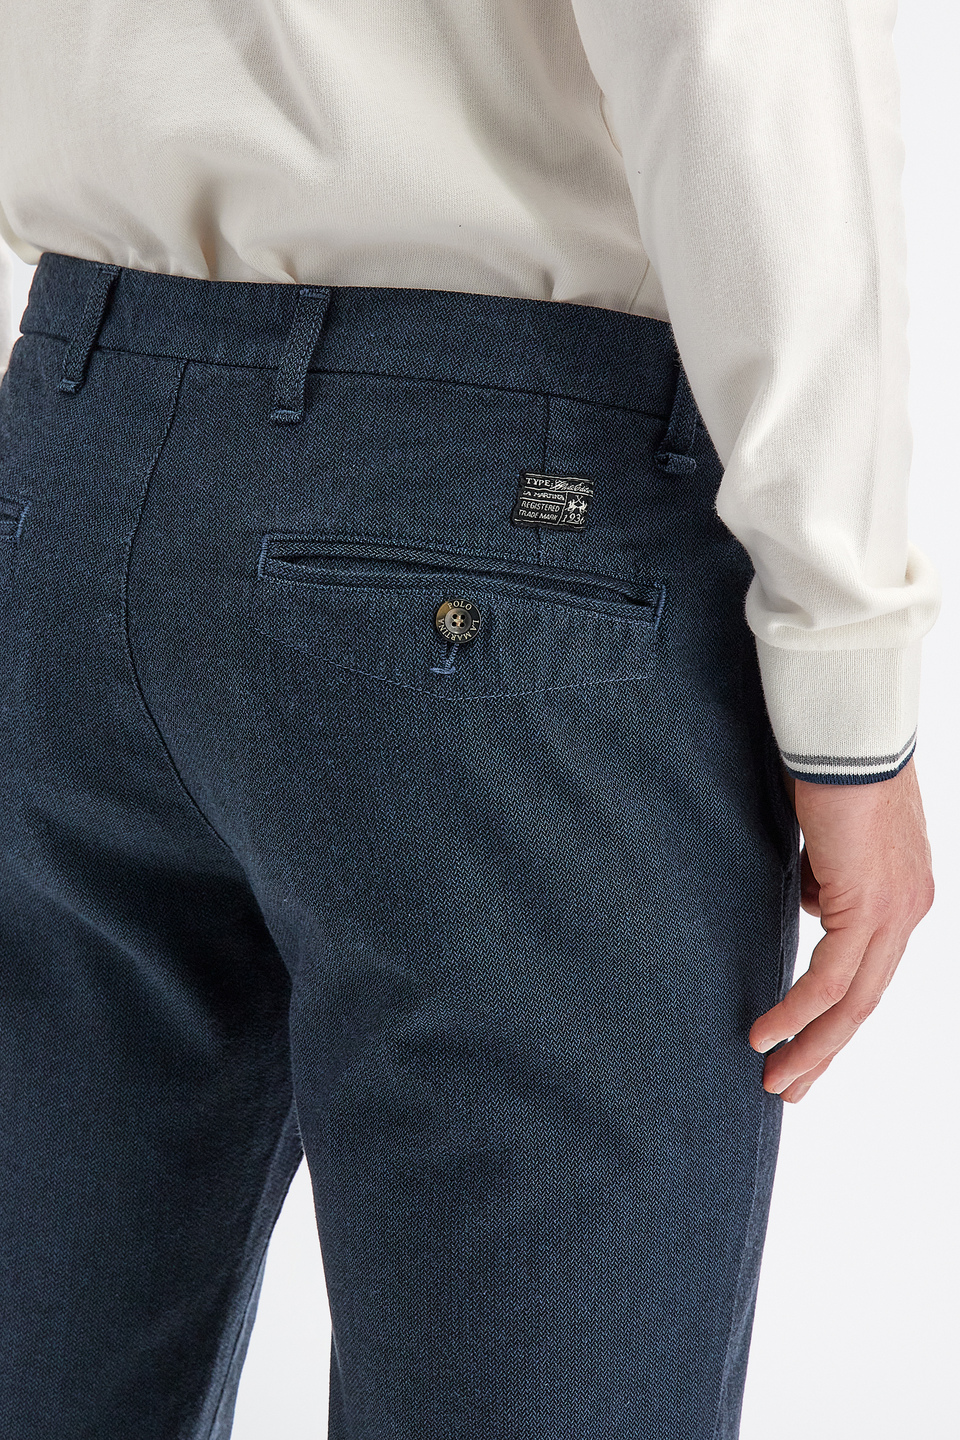 Men’s trousers 5 pockets regular fit cotton | La Martina - Official Online Shop